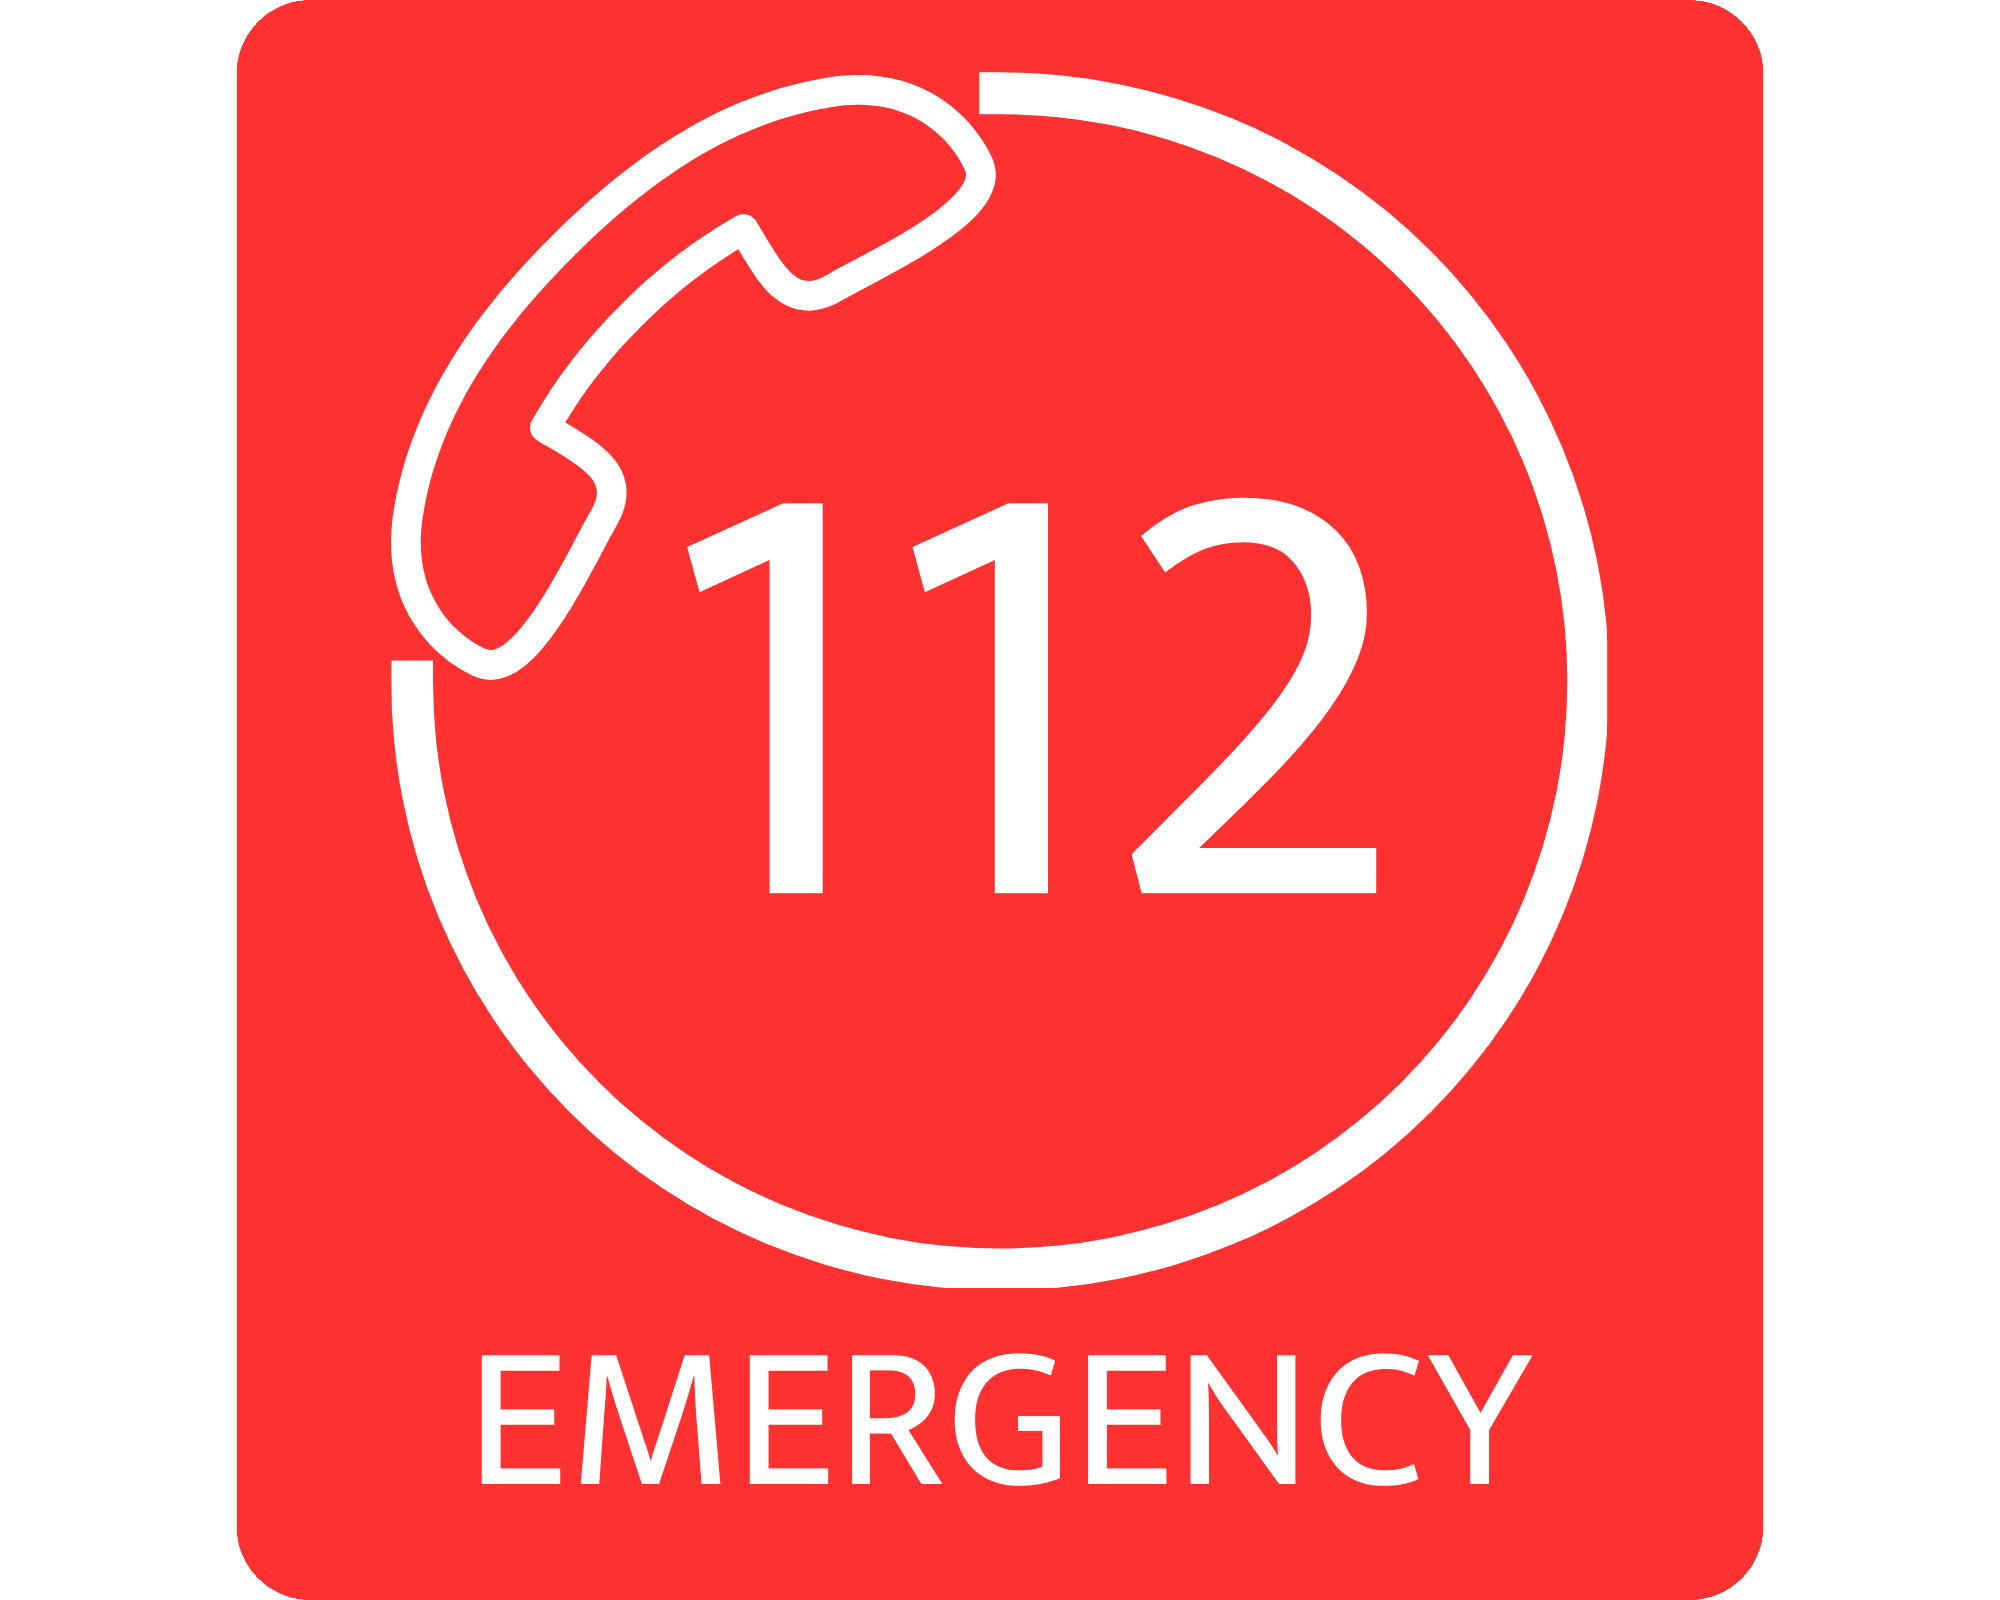 Euro emergency call 112